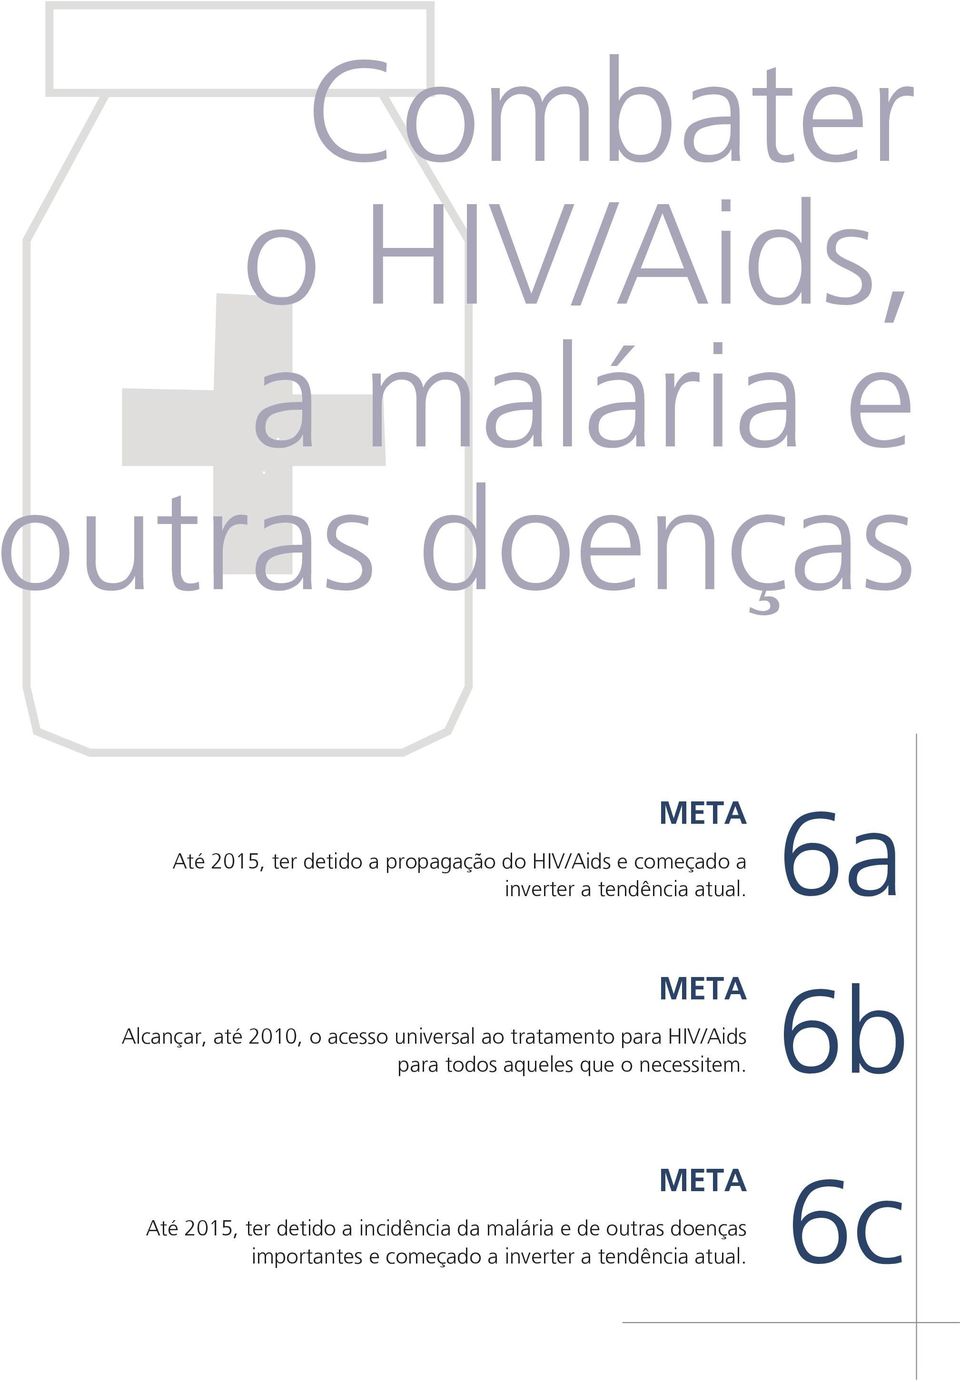 6a META Alcançar, até, o acesso universal ao tratamento para HIV/Aids para todos aqueles que